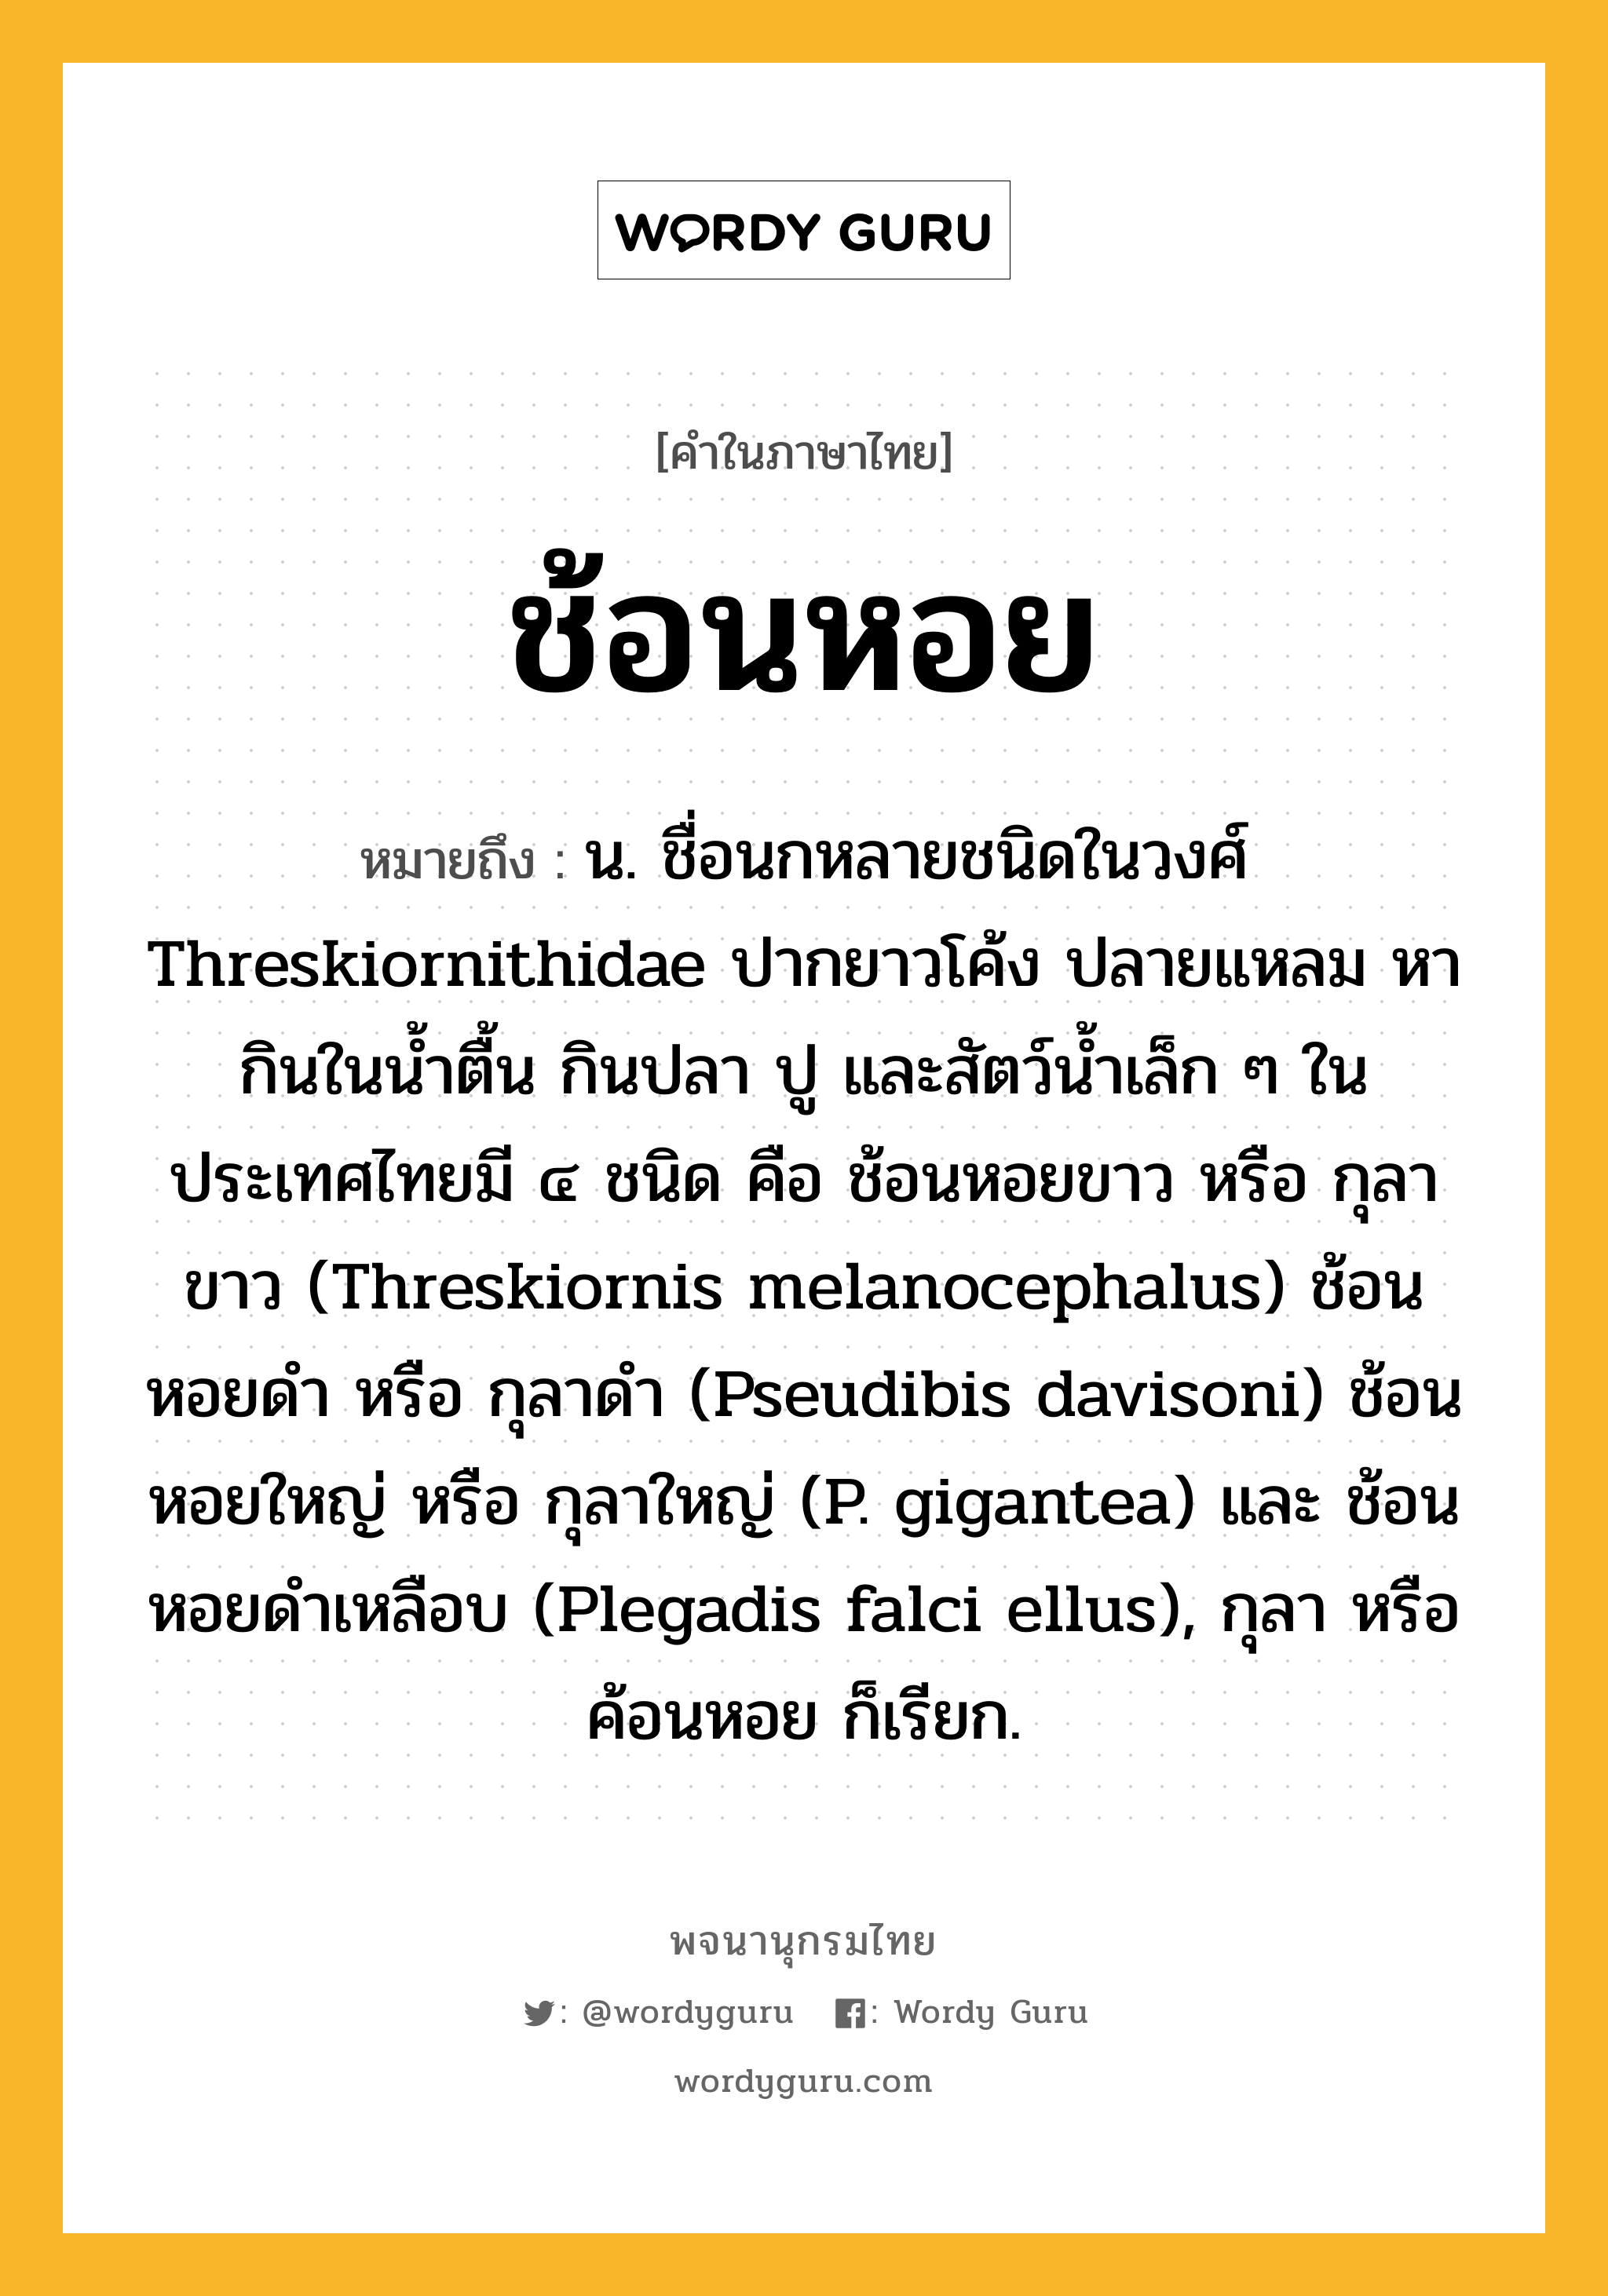 ช้อนหอย หมายถึงอะไร?, คำในภาษาไทย ช้อนหอย หมายถึง น. ชื่อนกหลายชนิดในวงศ์ Threskiornithidae ปากยาวโค้ง ปลายแหลม หากินในนํ้าตื้น กินปลา ปู และสัตว์นํ้าเล็ก ๆ ในประเทศไทยมี ๔ ชนิด คือ ช้อนหอยขาว หรือ กุลาขาว (Threskiornis melanocephalus) ช้อนหอยดํา หรือ กุลาดํา (Pseudibis davisoni) ช้อนหอยใหญ่ หรือ กุลาใหญ่ (P. gigantea) และ ช้อนหอยดำเหลือบ (Plegadis falci ellus), กุลา หรือ ค้อนหอย ก็เรียก.